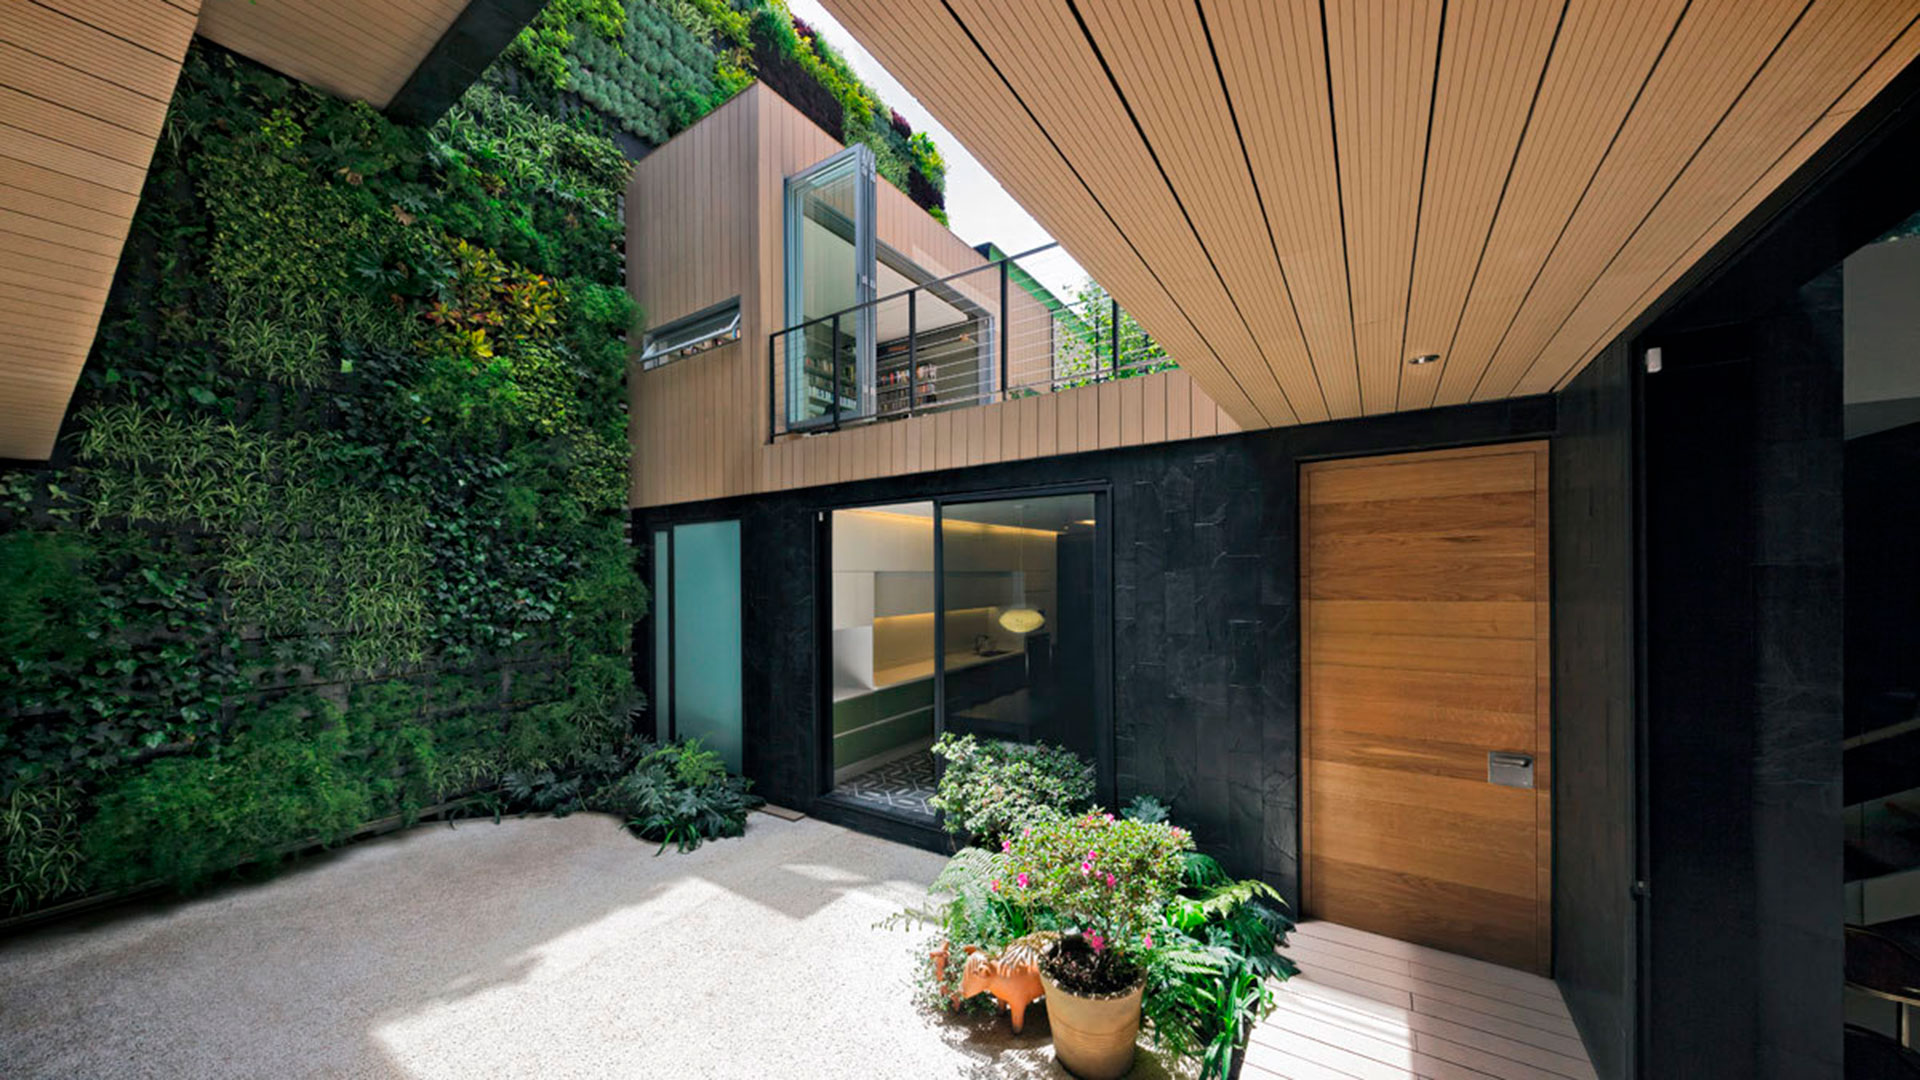 La madera, piedra y vegetación son claves para que una vivienda sea amigable con el medio ambiente